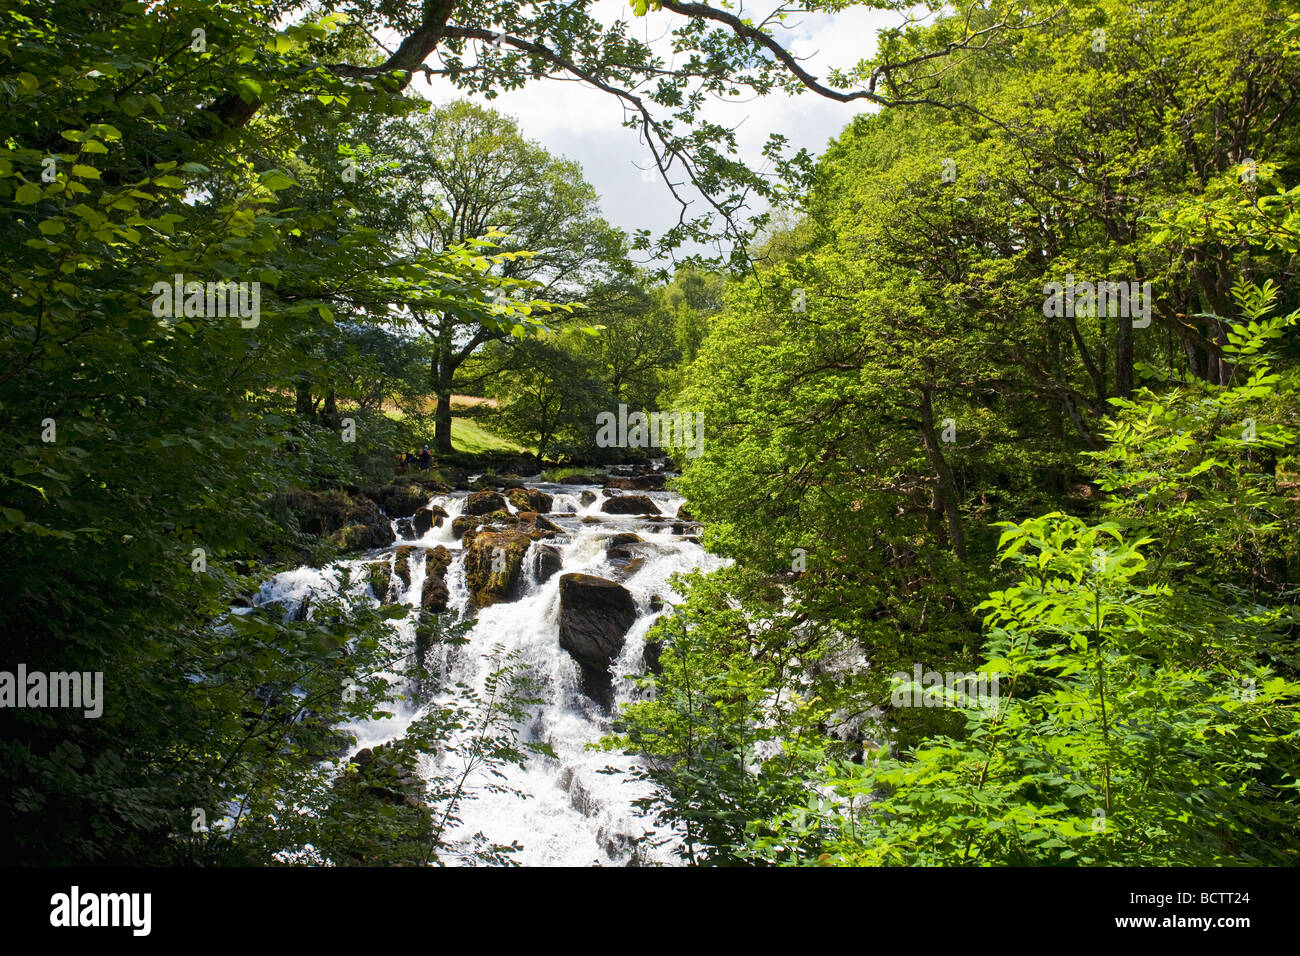 Swallow Falls Chutes Cascade River Llugwy en été soleil Juillet Betws-Y-Coed Cymru, Nord du Pays de Galles UK Royaume-Uni GB Banque D'Images